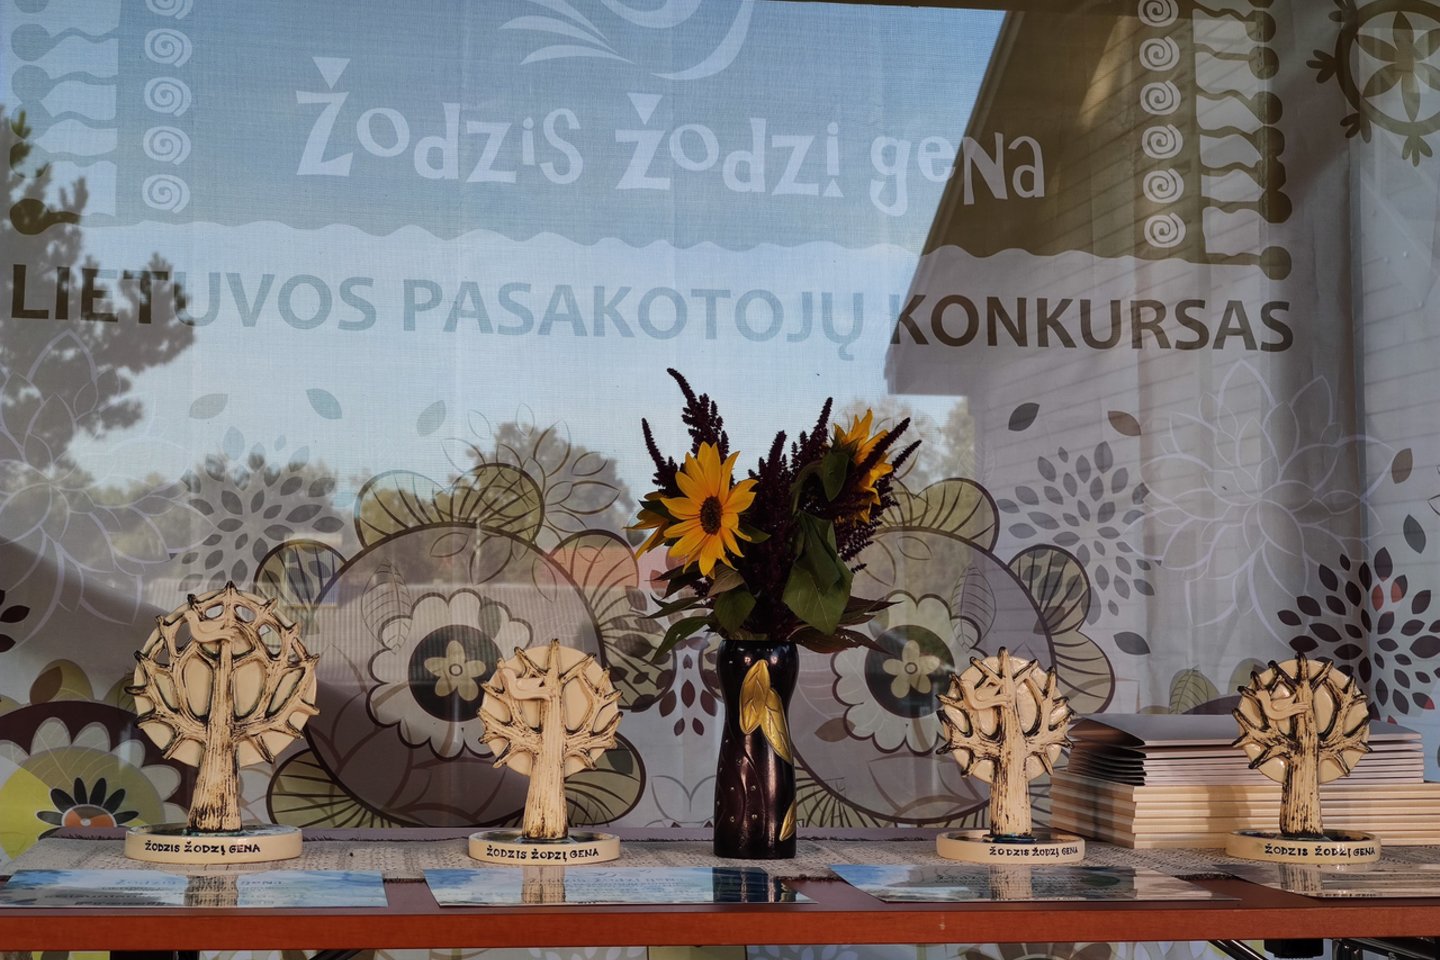 Devintąjį kartą surengtas Lietuvos pasakotojų konkursas „Žodzis žodzį gena“.<br>Organizatorių nuotr.